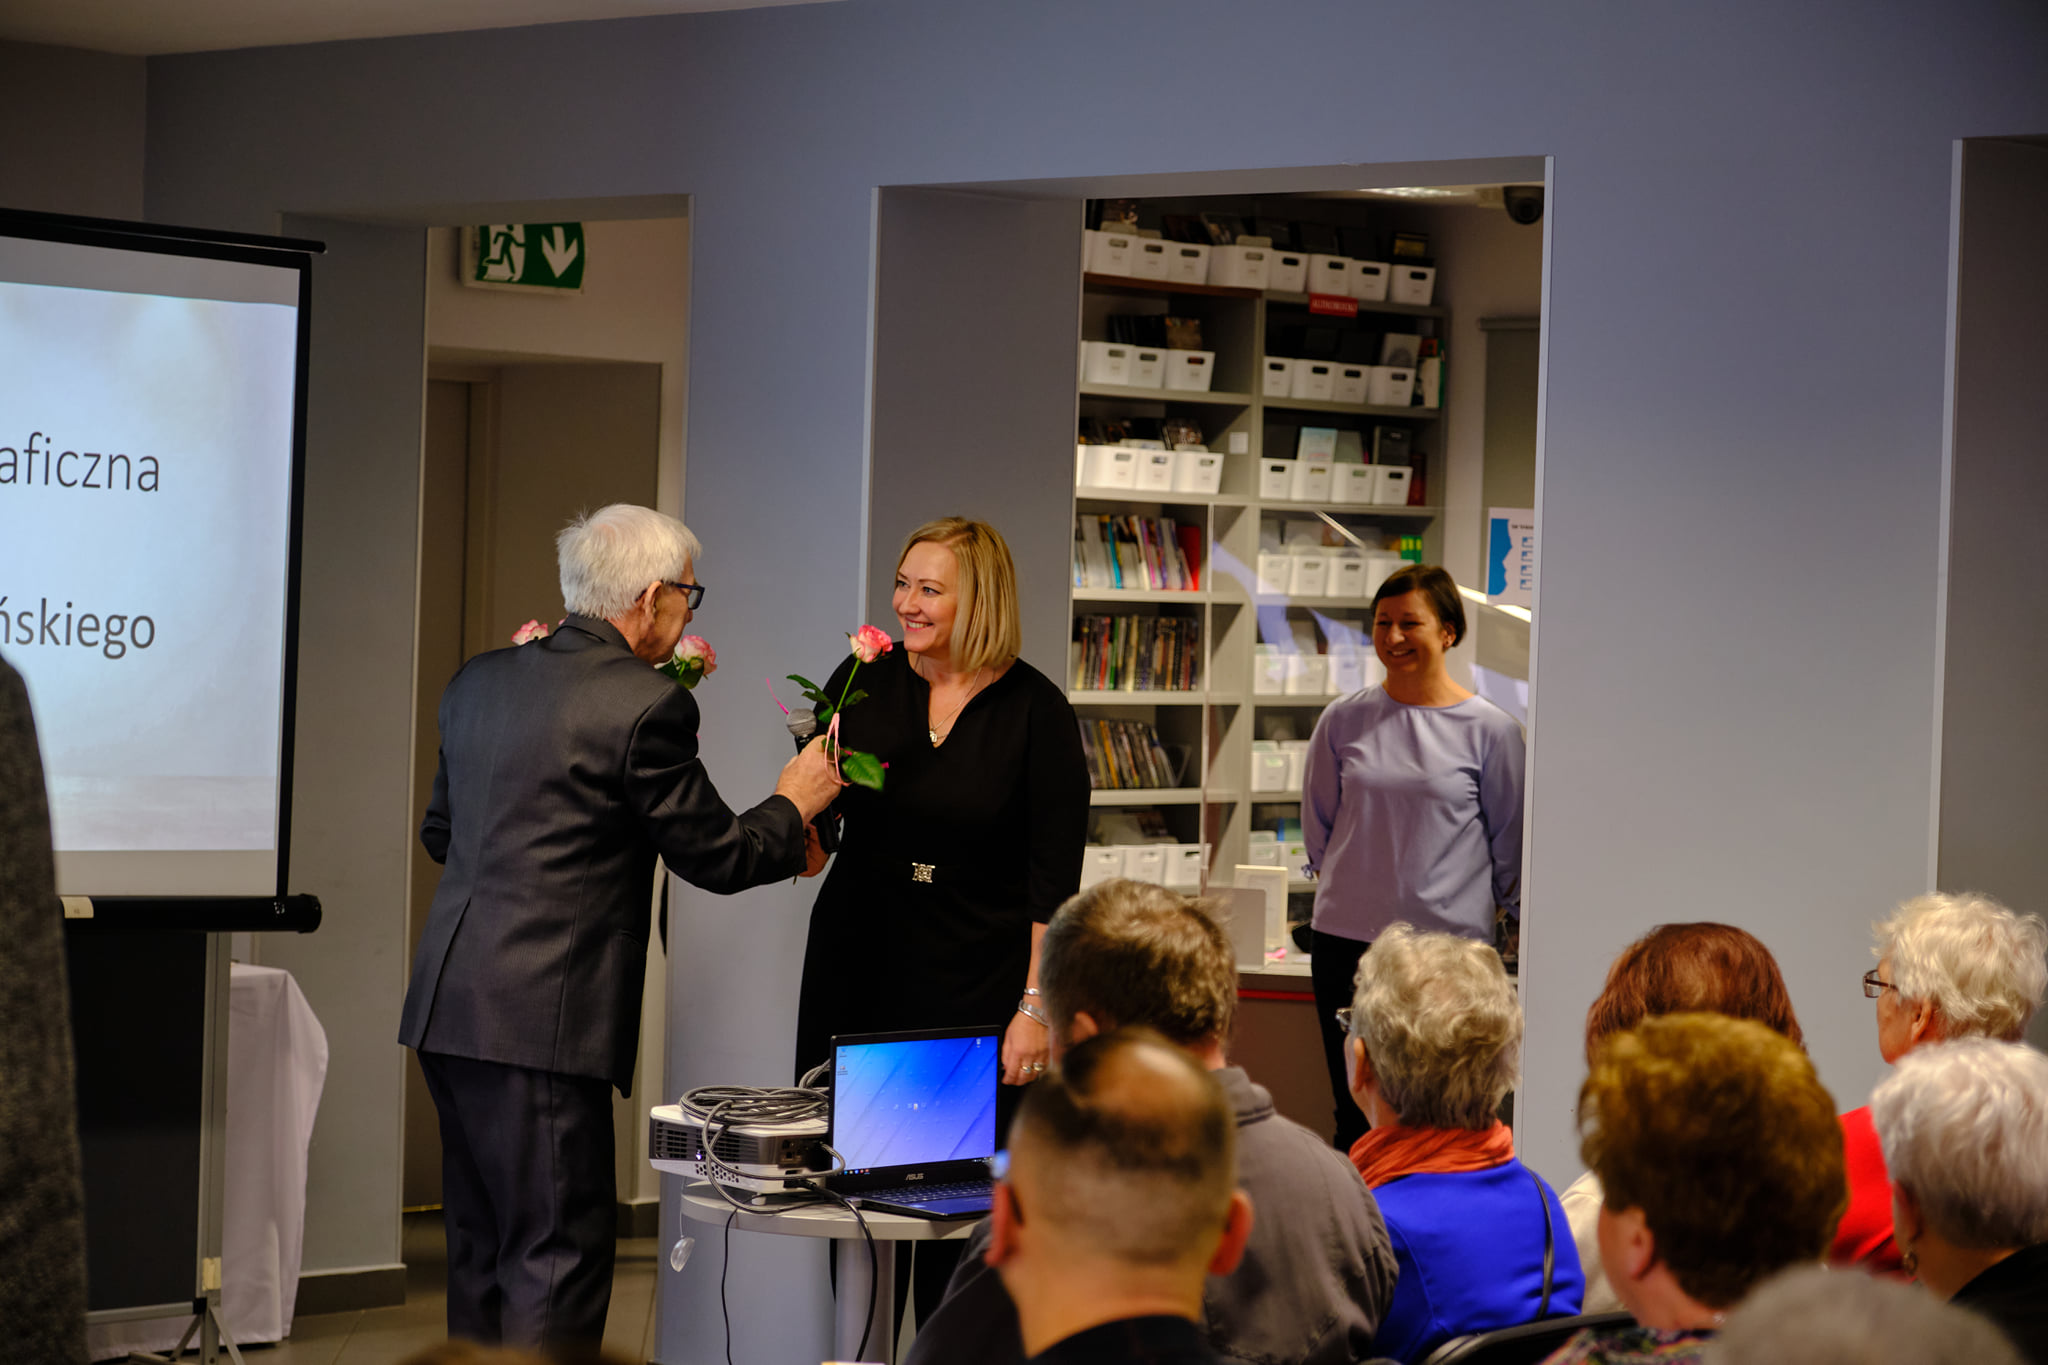 Ryszard Makszyński wręcza kwiaty dyrektorce biblioteki, z przodu zdjęcia widać siedzącą publiczność